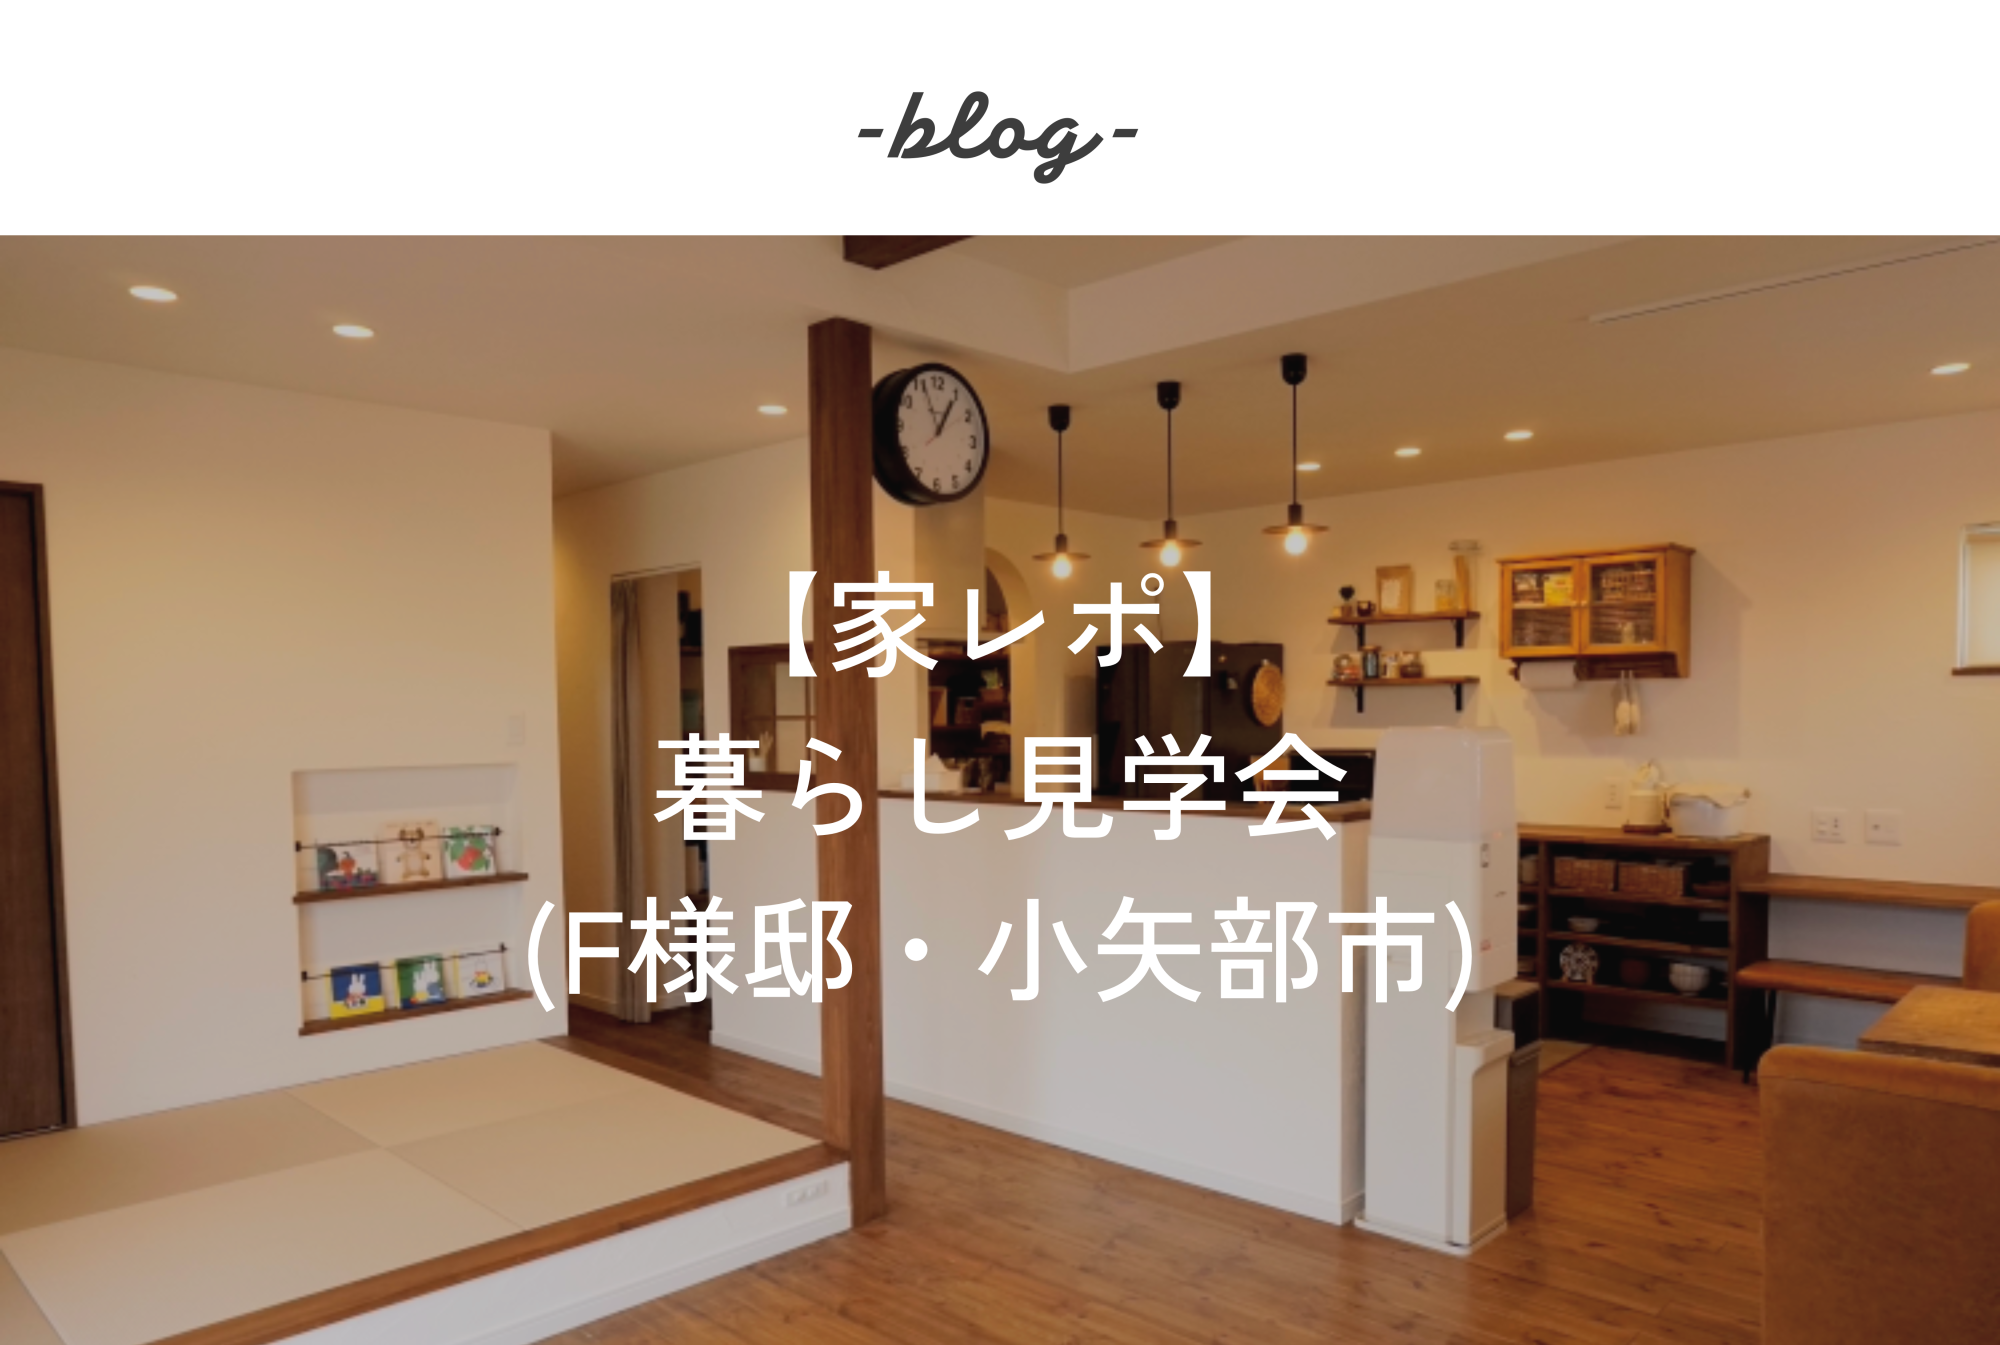 スタッフブログ「【家レポ】暮らし見学会(F様邸・小矢部市)」を更新しました！